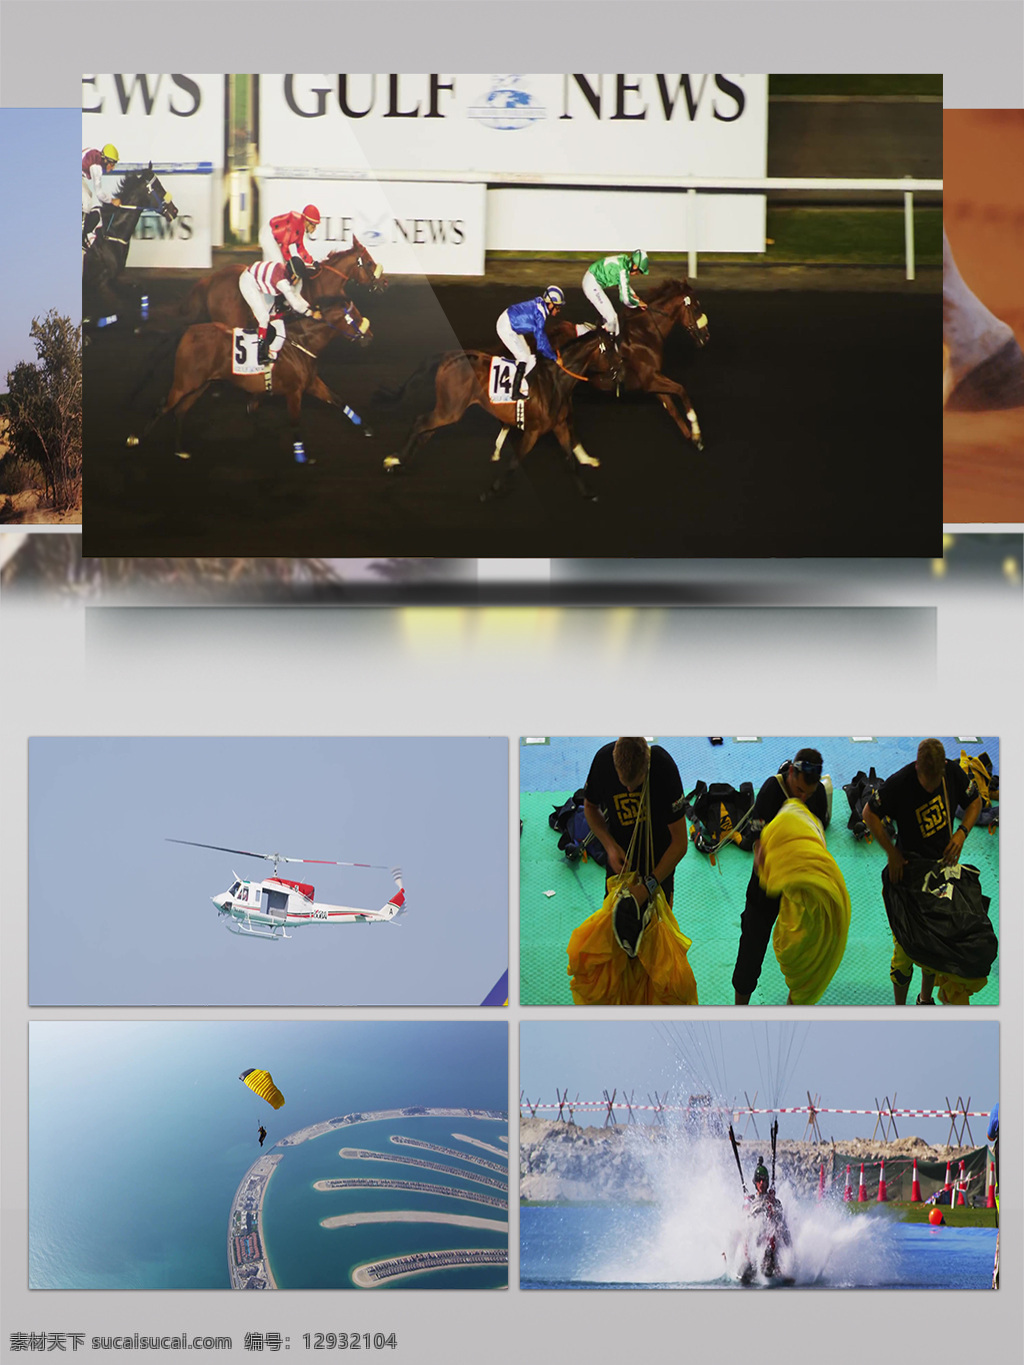 2k 沙漠 城市 动物 跳伞 航拍 视频 骑马 阿拉伯人 城市景观 直升机